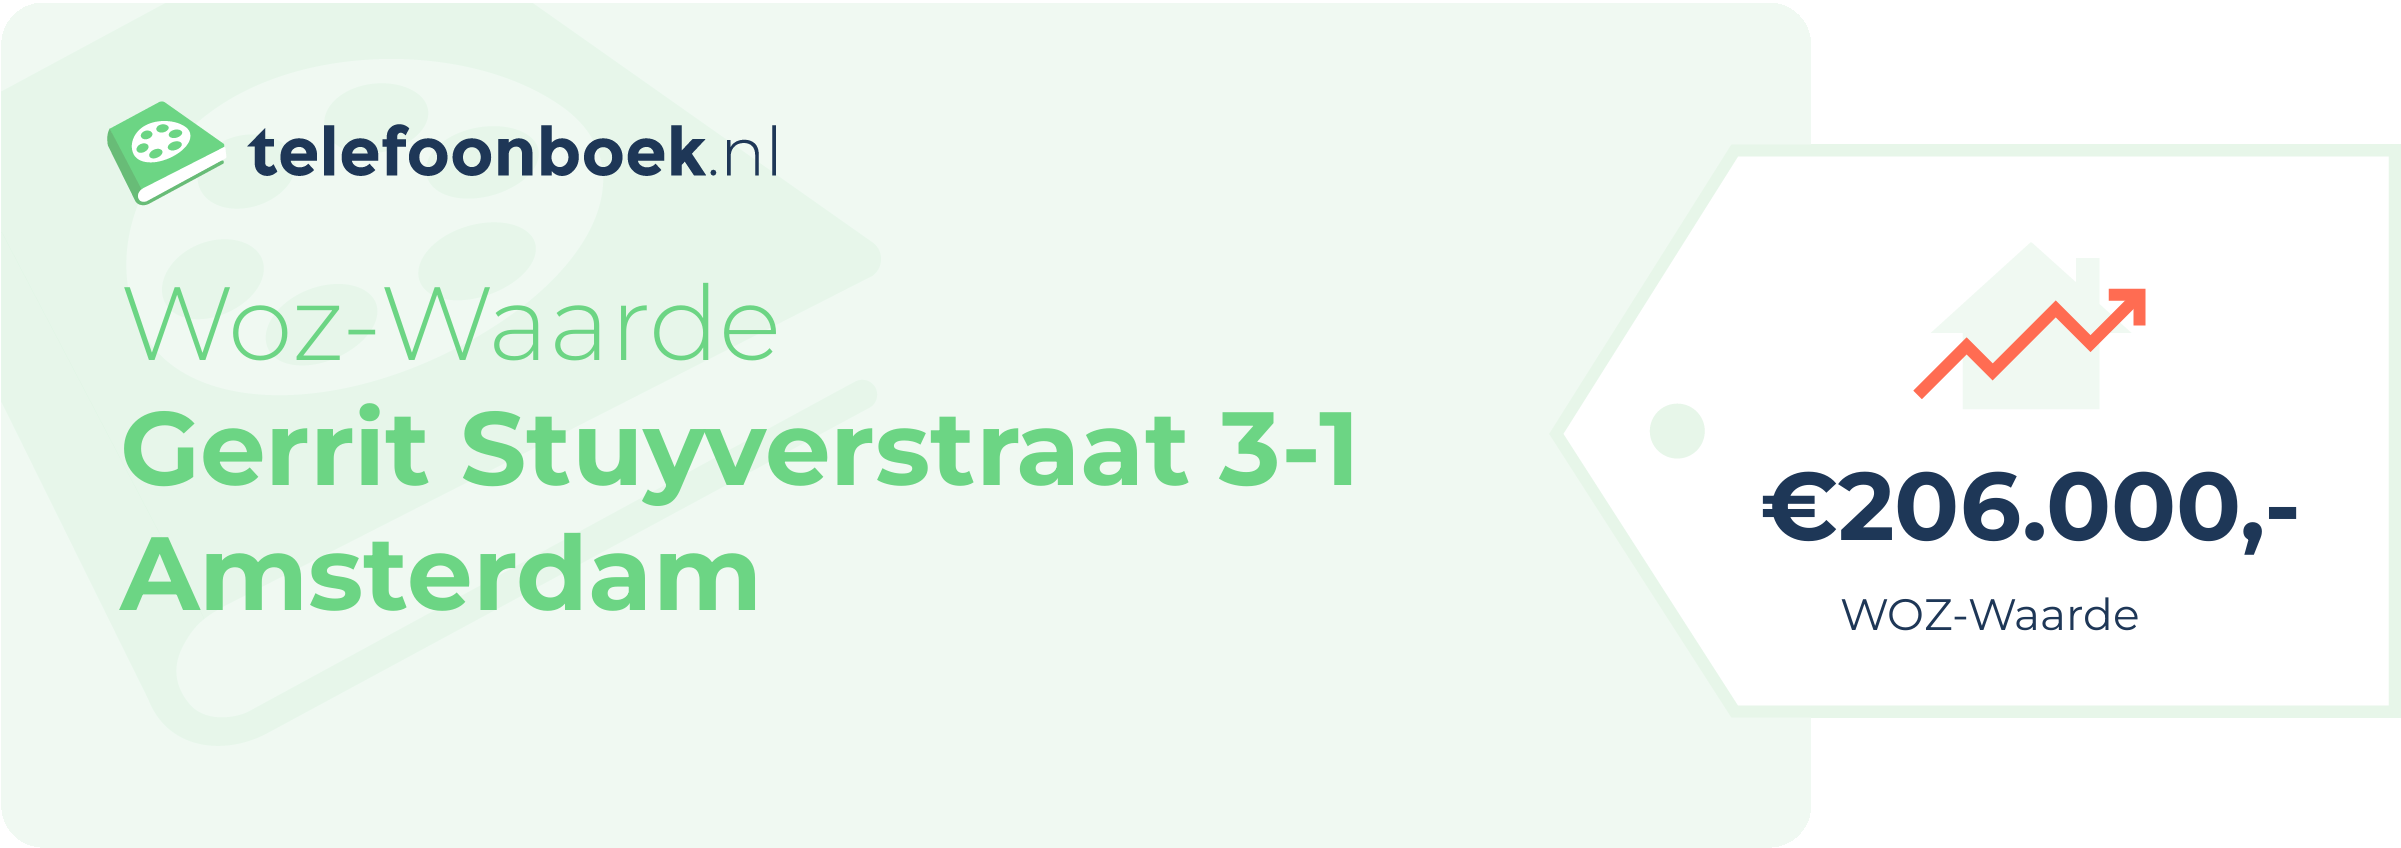 WOZ-waarde Gerrit Stuyverstraat 3-1 Amsterdam